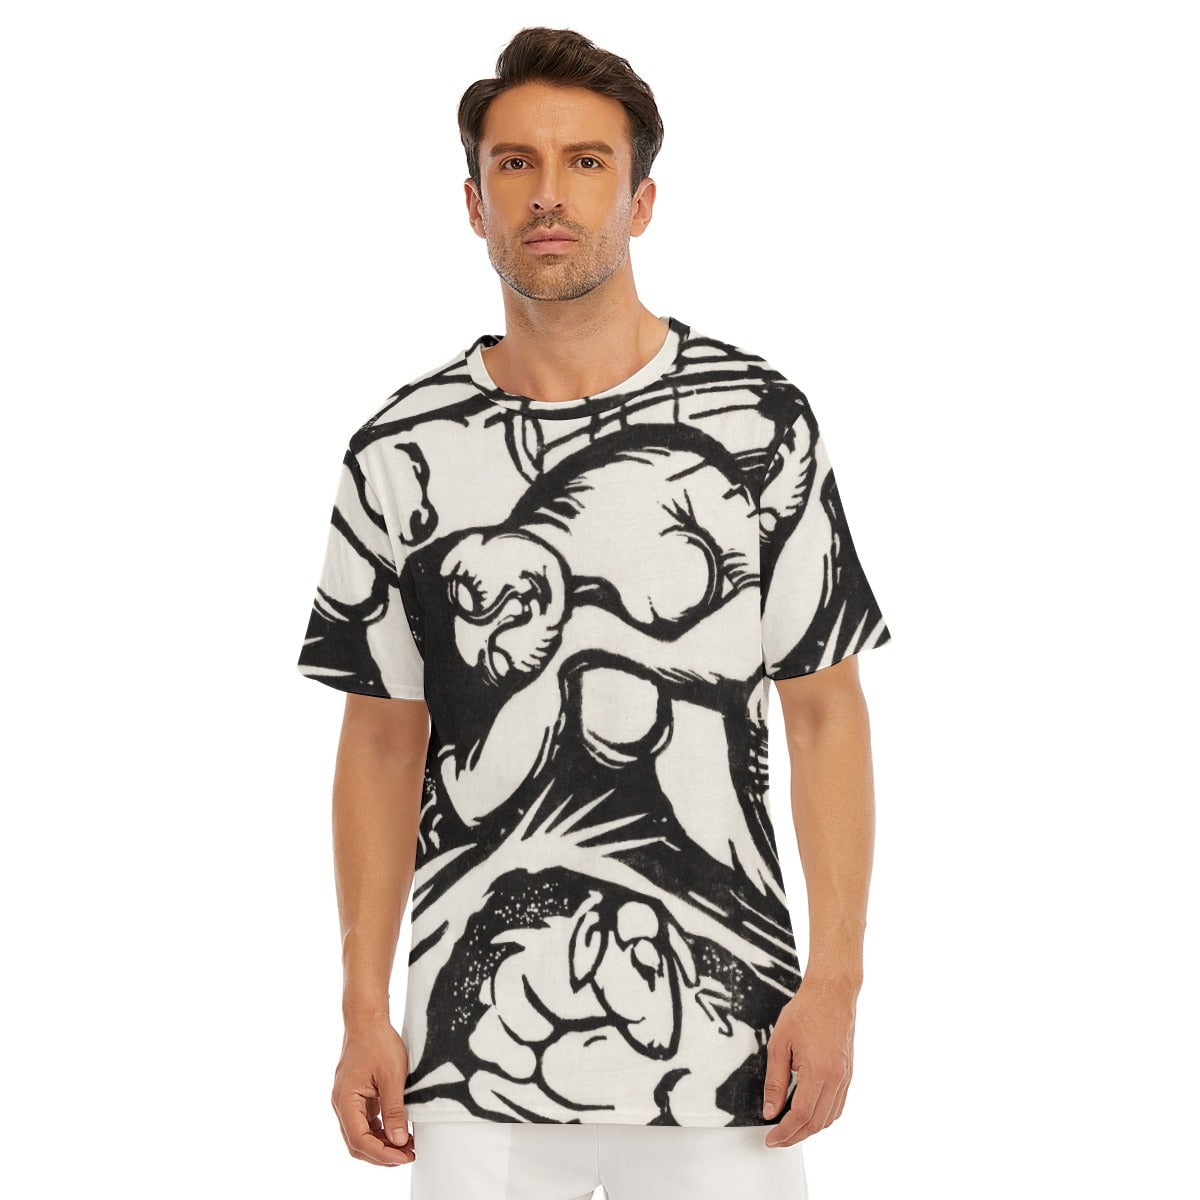 Franz Marc’s Sleeping Shepherdess T-Shirt - Famous Art Tee